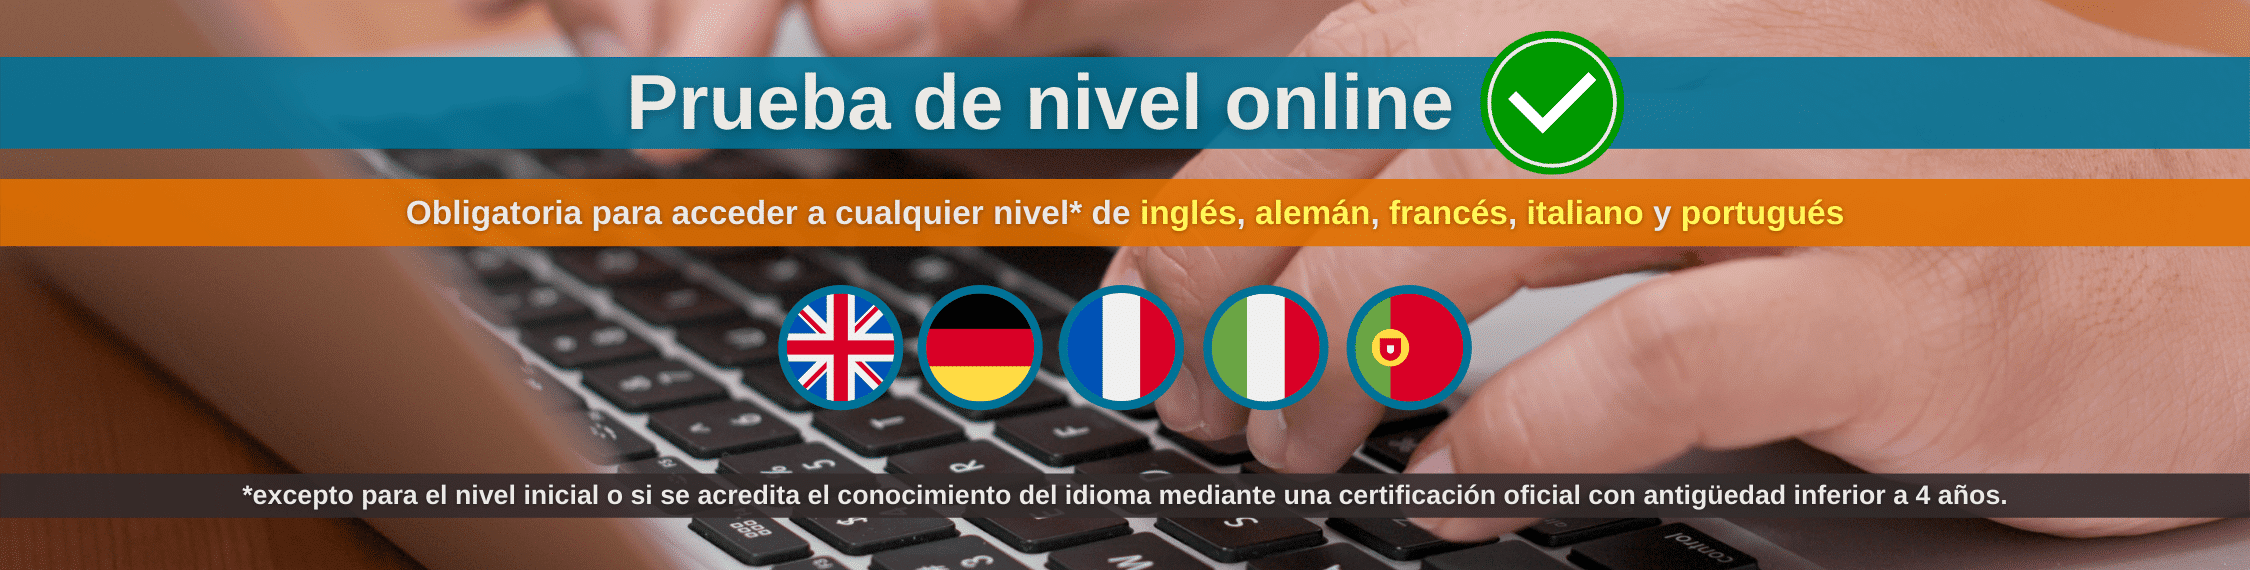 Banner prueba de nivel online Centro de Idiomas UVa